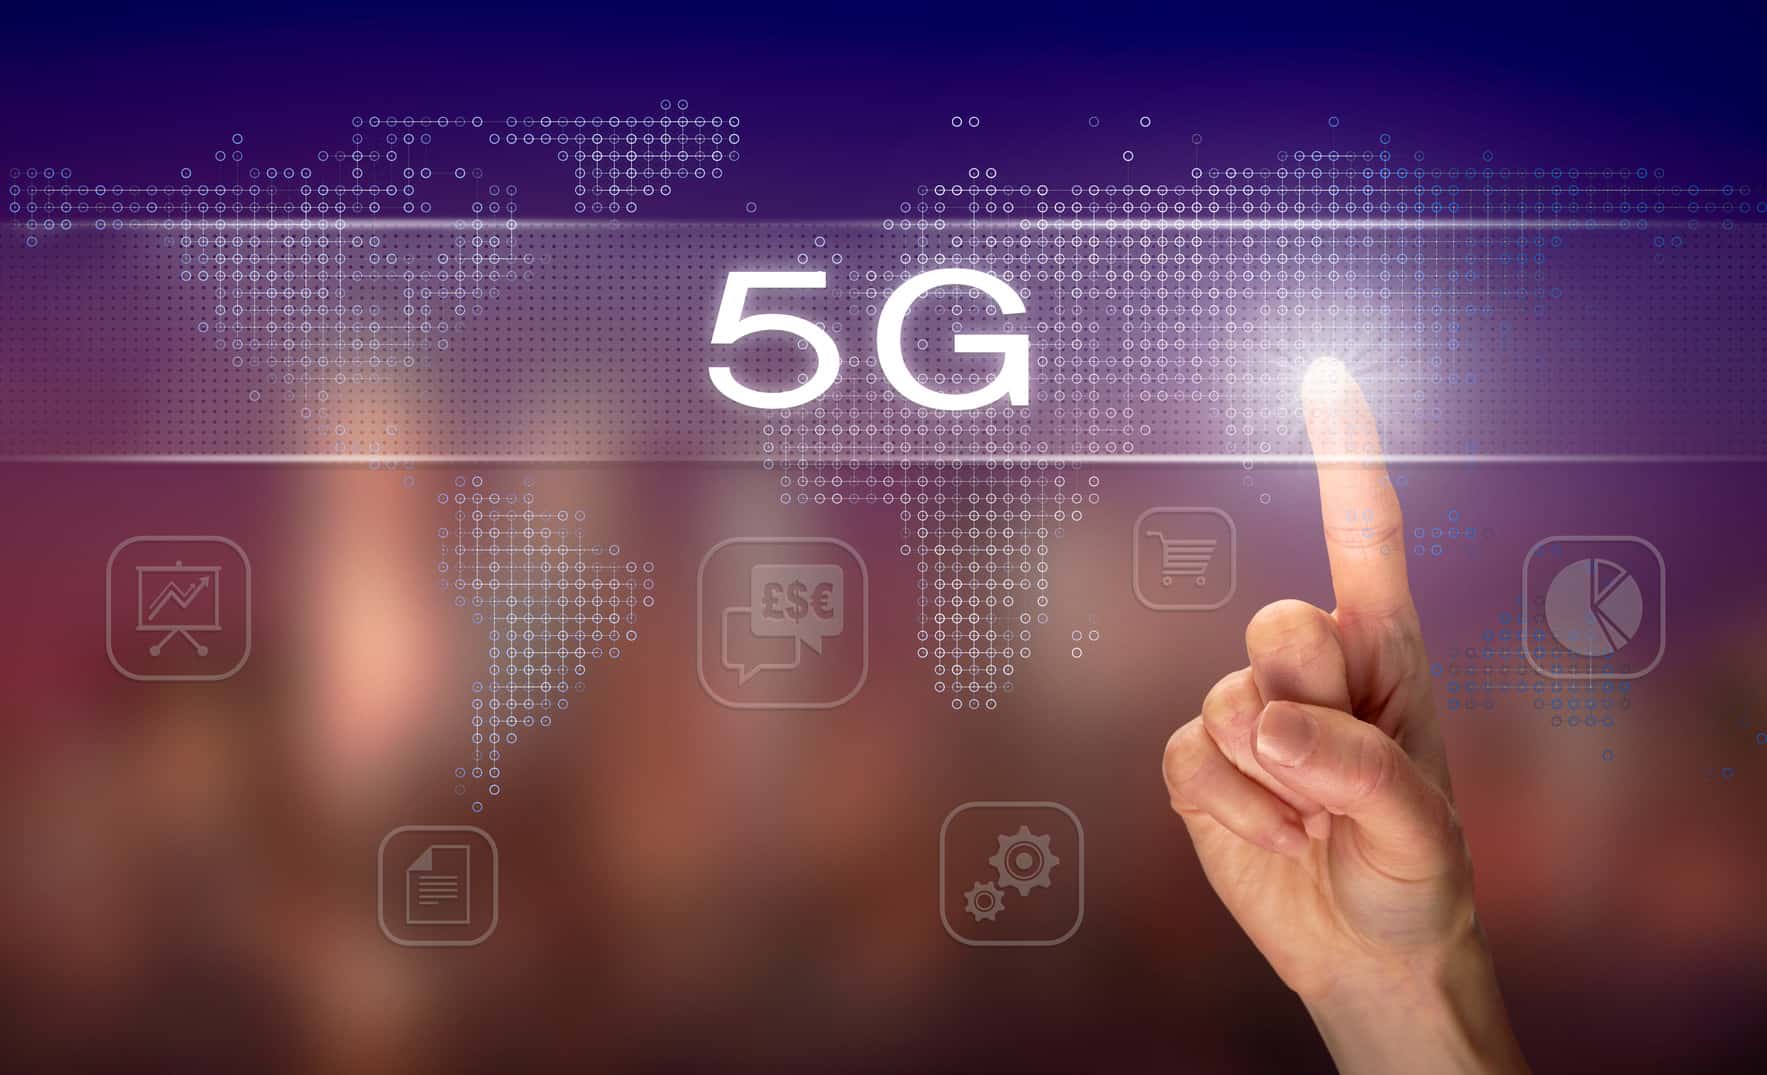 La tecnología 5G permitirá responder a la demanda y oferta de servicios de Internet de hasta 1 millón de usuarios de manera simultánea.